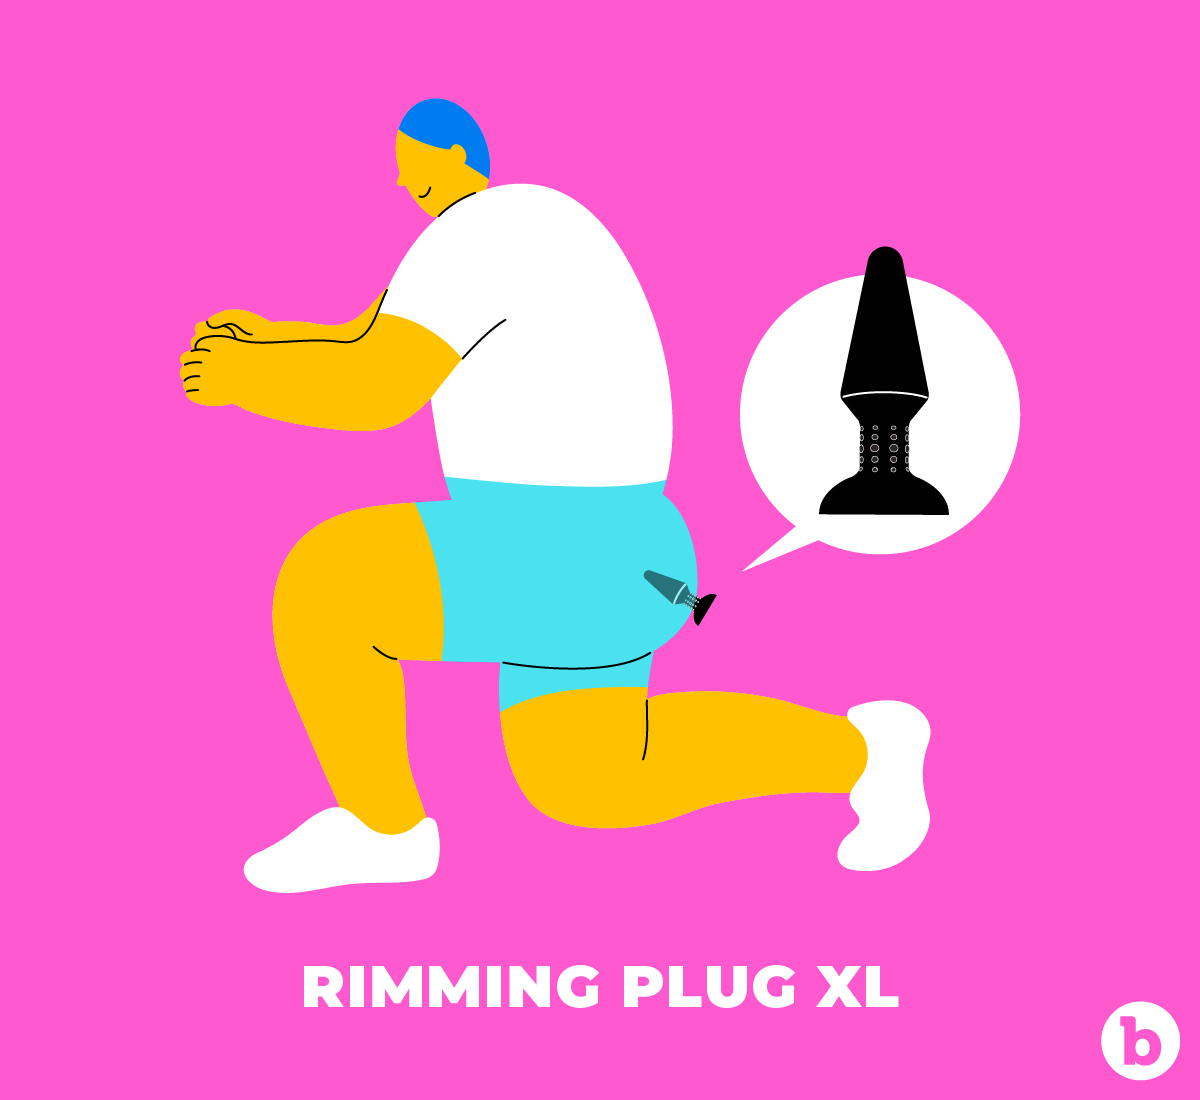 Rimming Plug XL